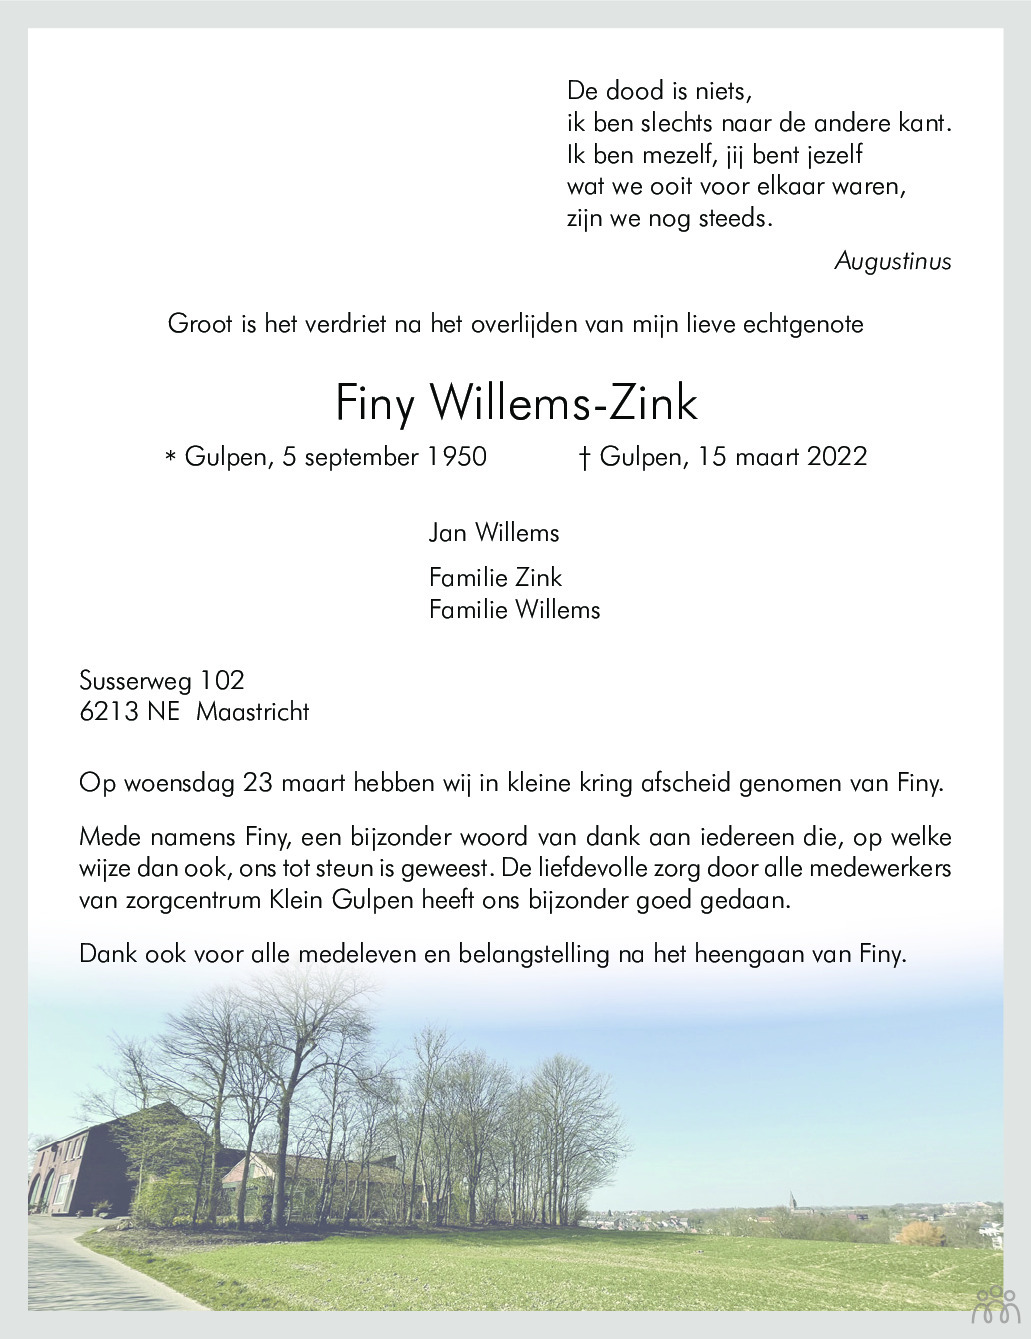 Overlijdensbericht van Finy Willems-Zink in De Limburger